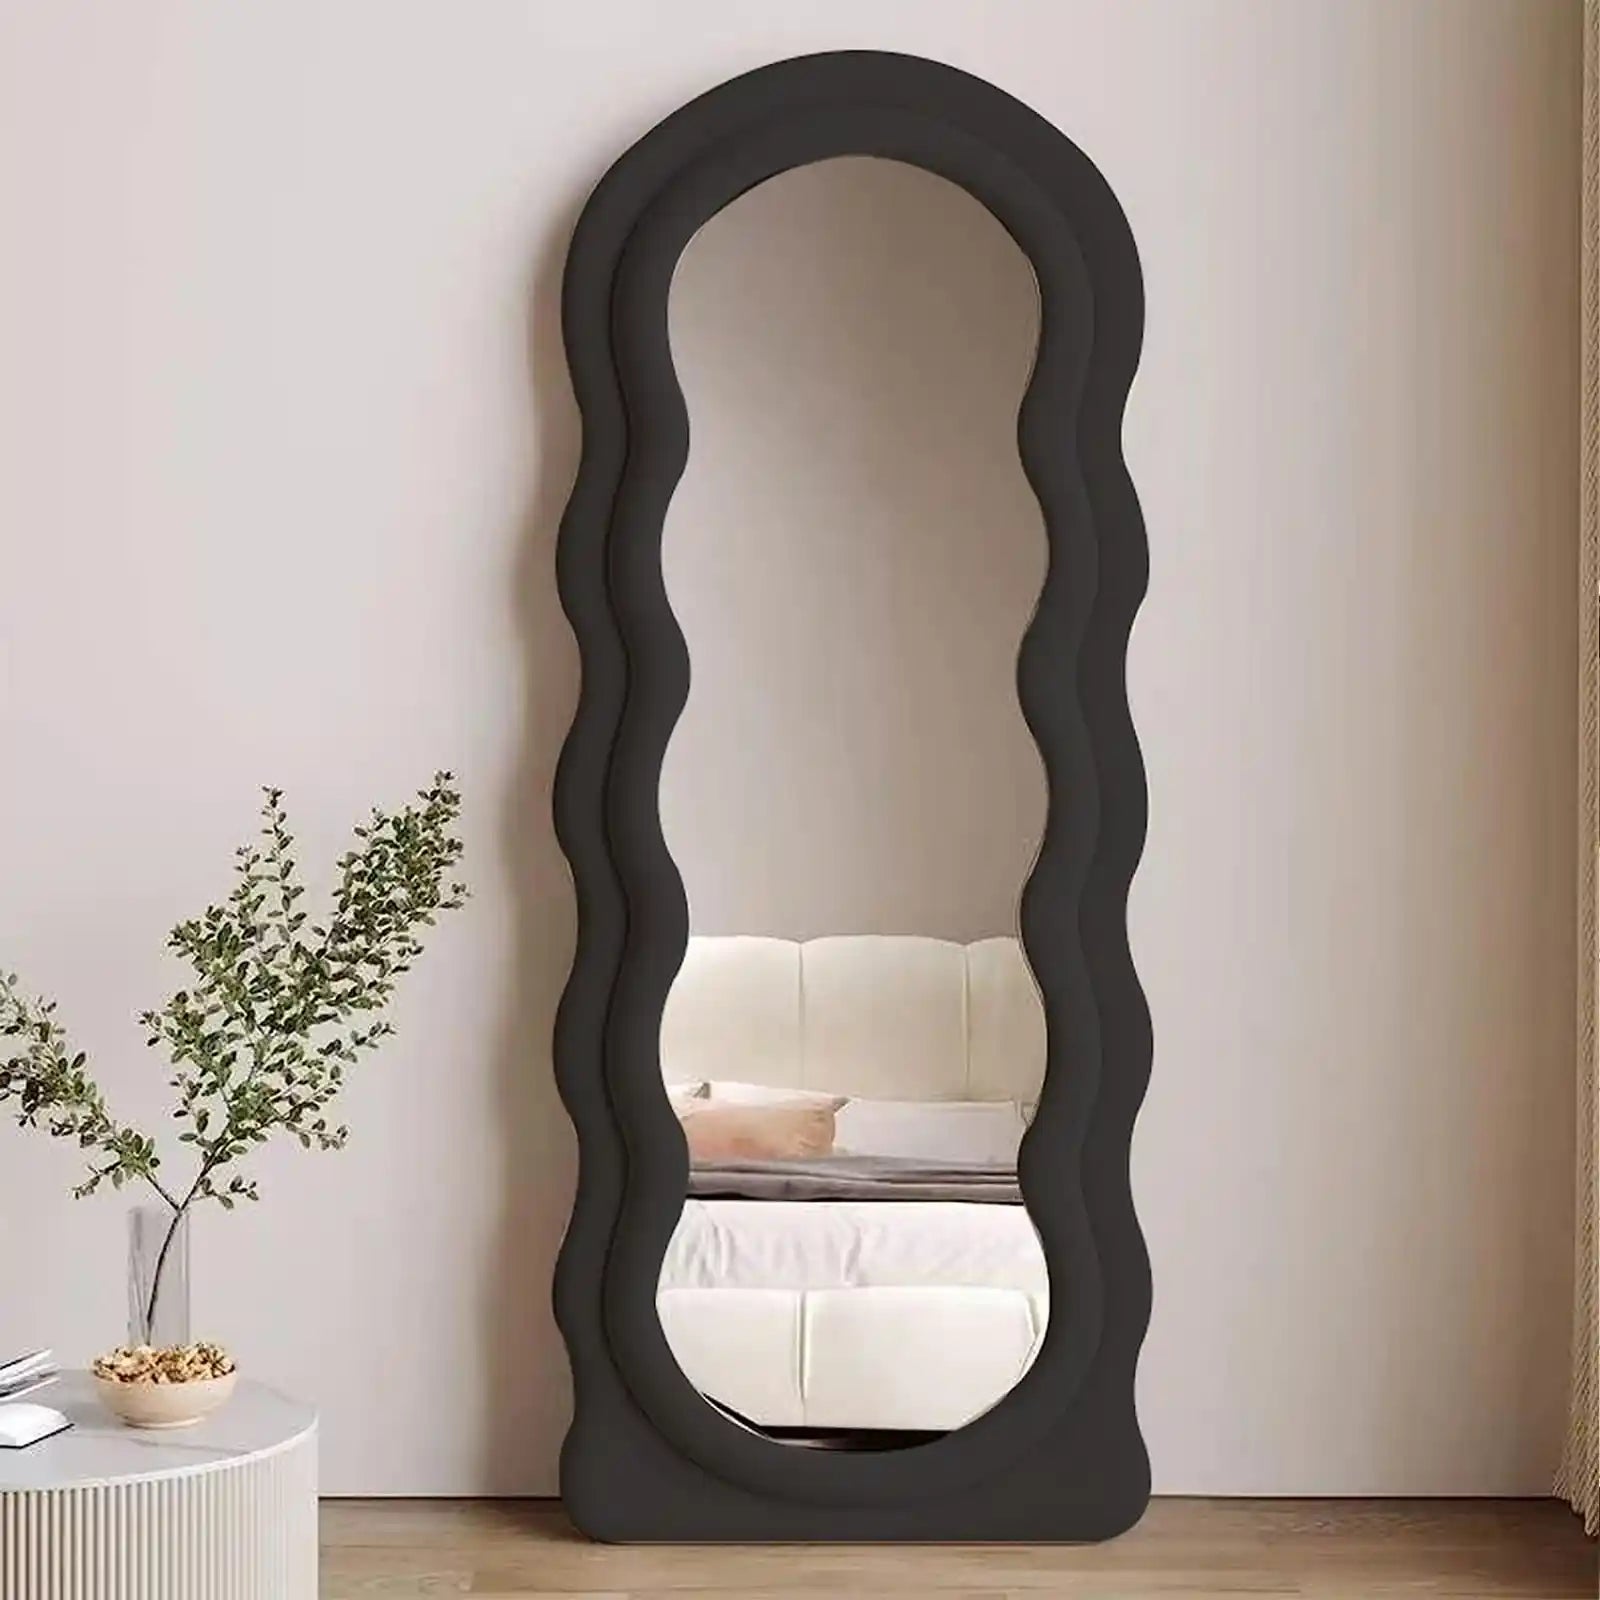 Espejo de longitud completa de 63 x 24 pulgadas, espejo ondulado irregular, espejo de piso ondulado, espejo montado en la pared de pie o apoyado contra la pared para dormitorio, sala de estar, espejo con marco de madera envuelto en franela, color negro 